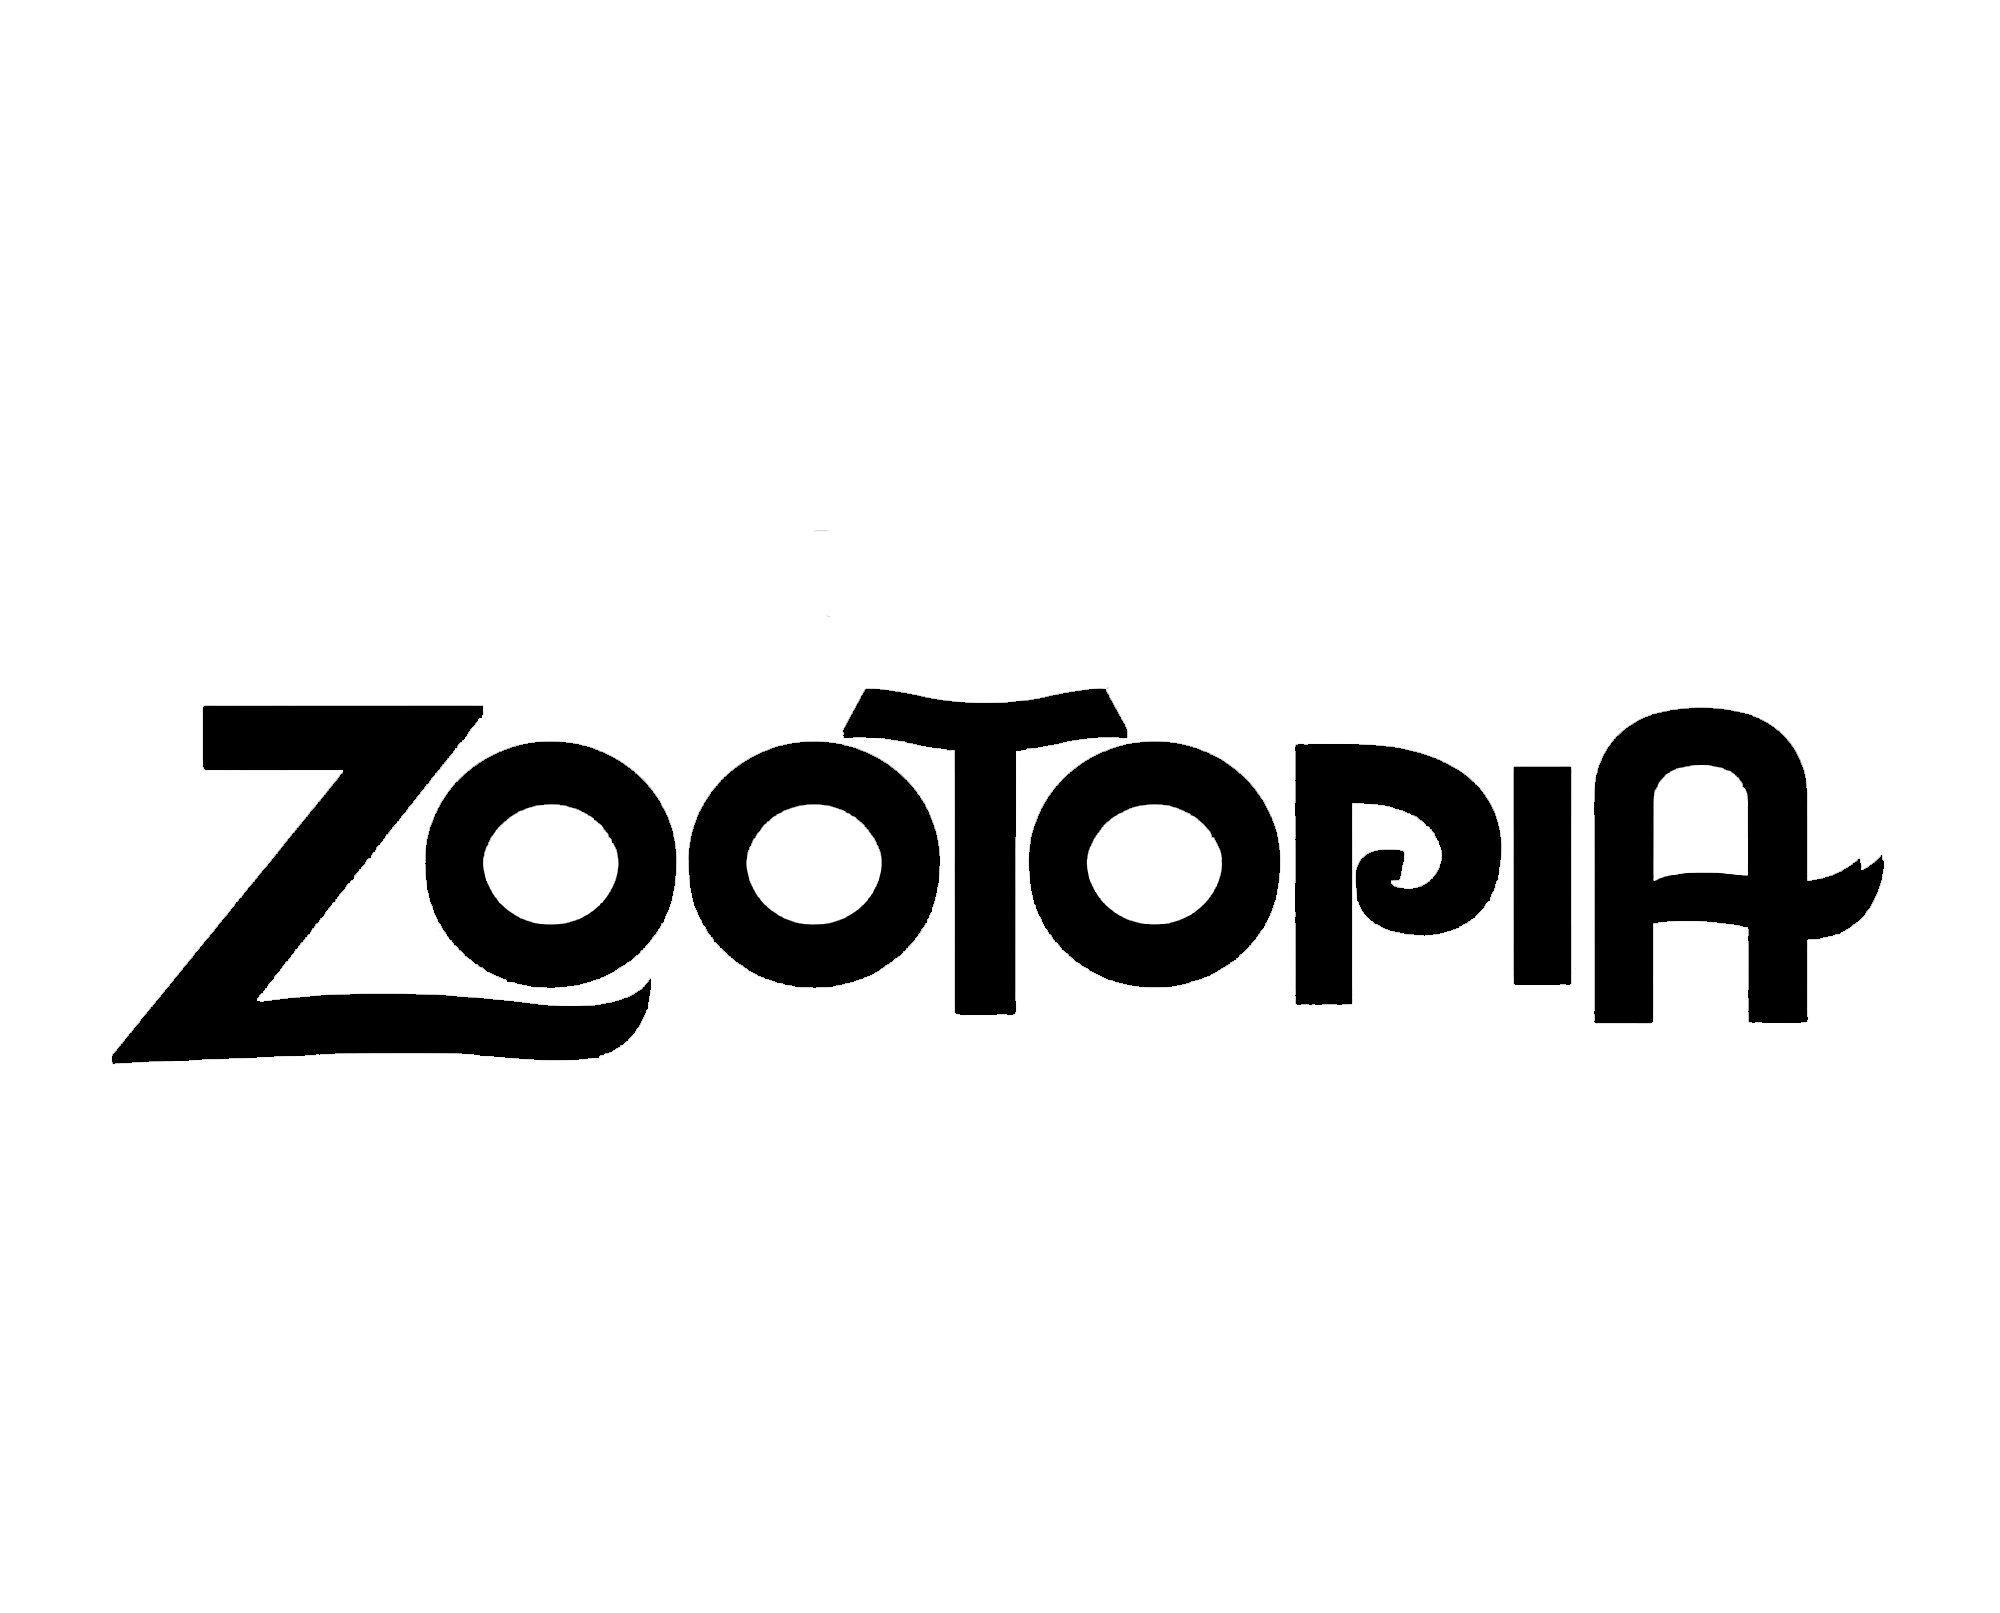 Zootopia Logo - ZOOTOPIA (logo).png